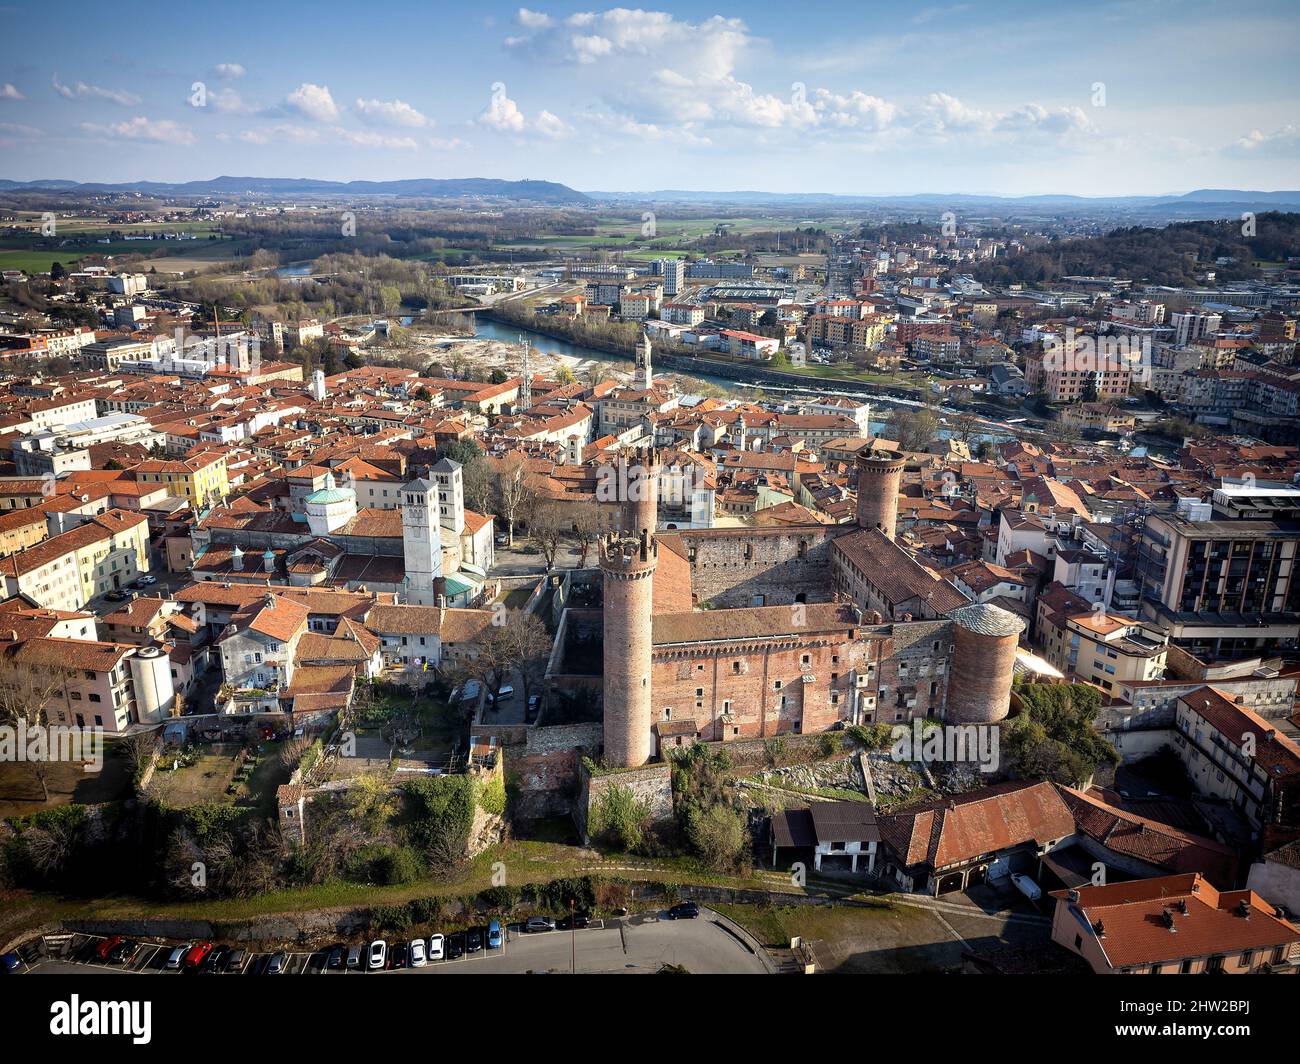 Vista aérea del centro histórico con el Castillo con sus torres rojas en primer plano. Ivrea, Italia - Marzo de 2021 Foto de stock